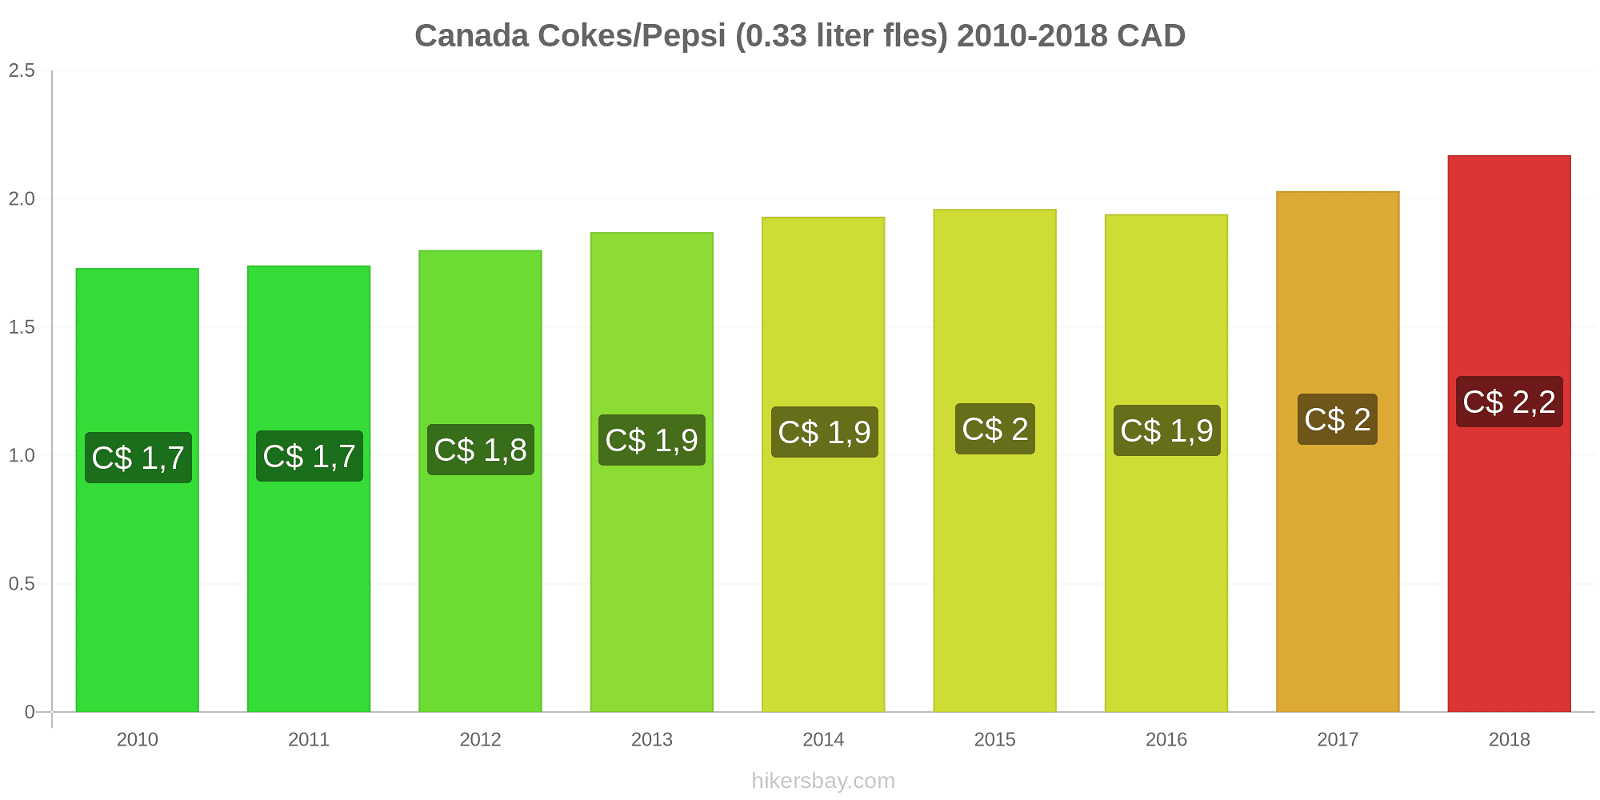 Canada prijswijzigingen Cokes/Pepsi (0,33 literfles) hikersbay.com